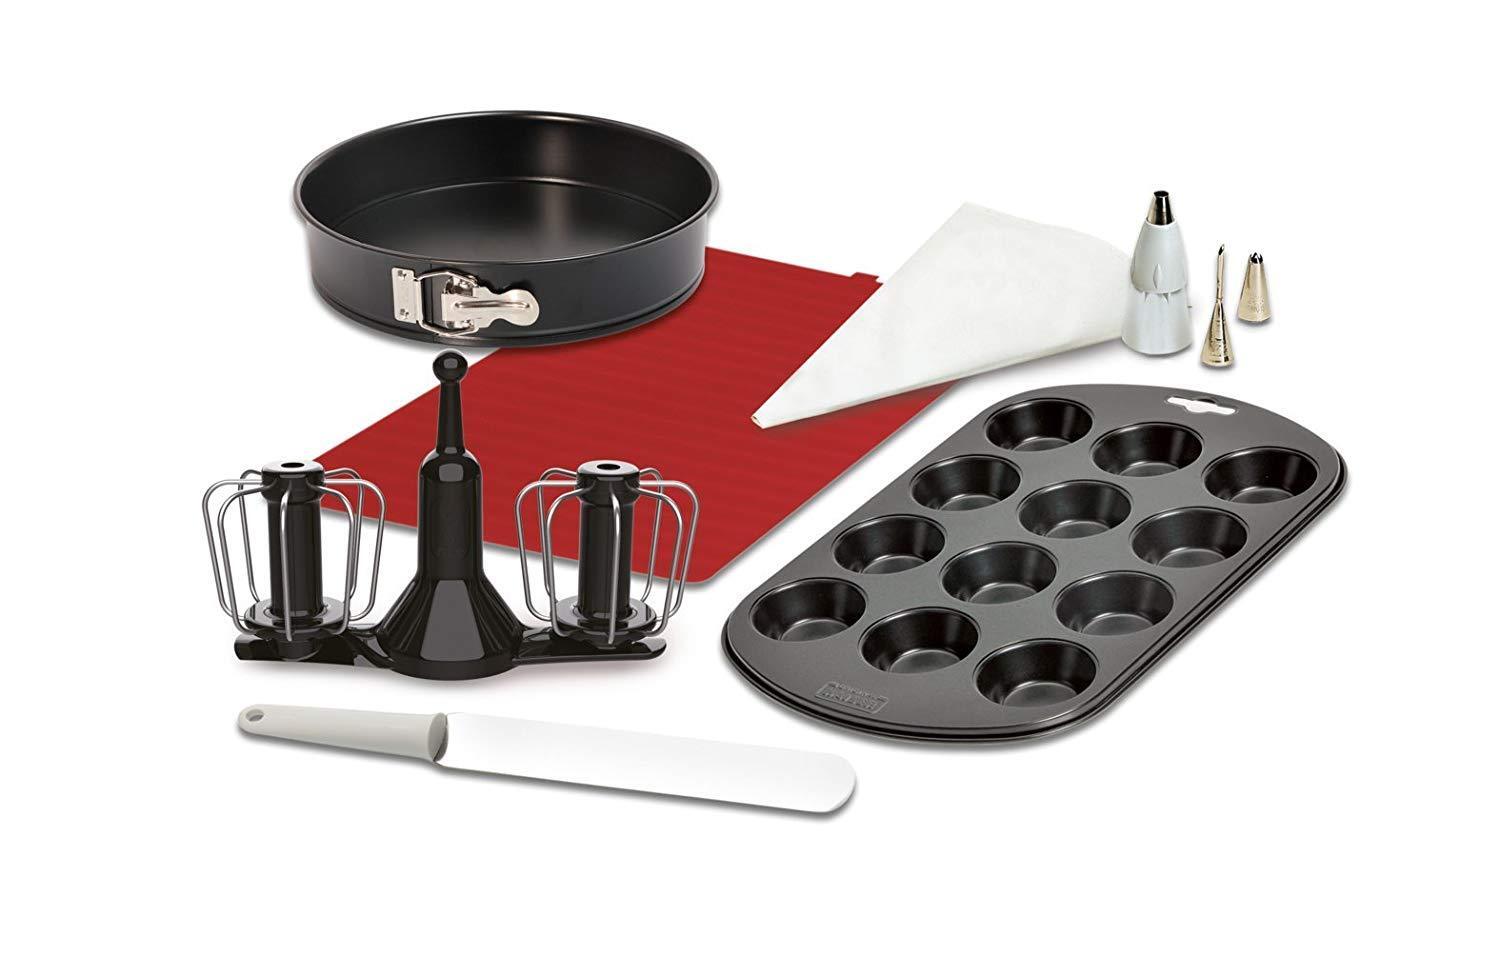 Moulinex nuovo accessorio kit pasticceria Cuisine Companion CuCo HF800 HF900